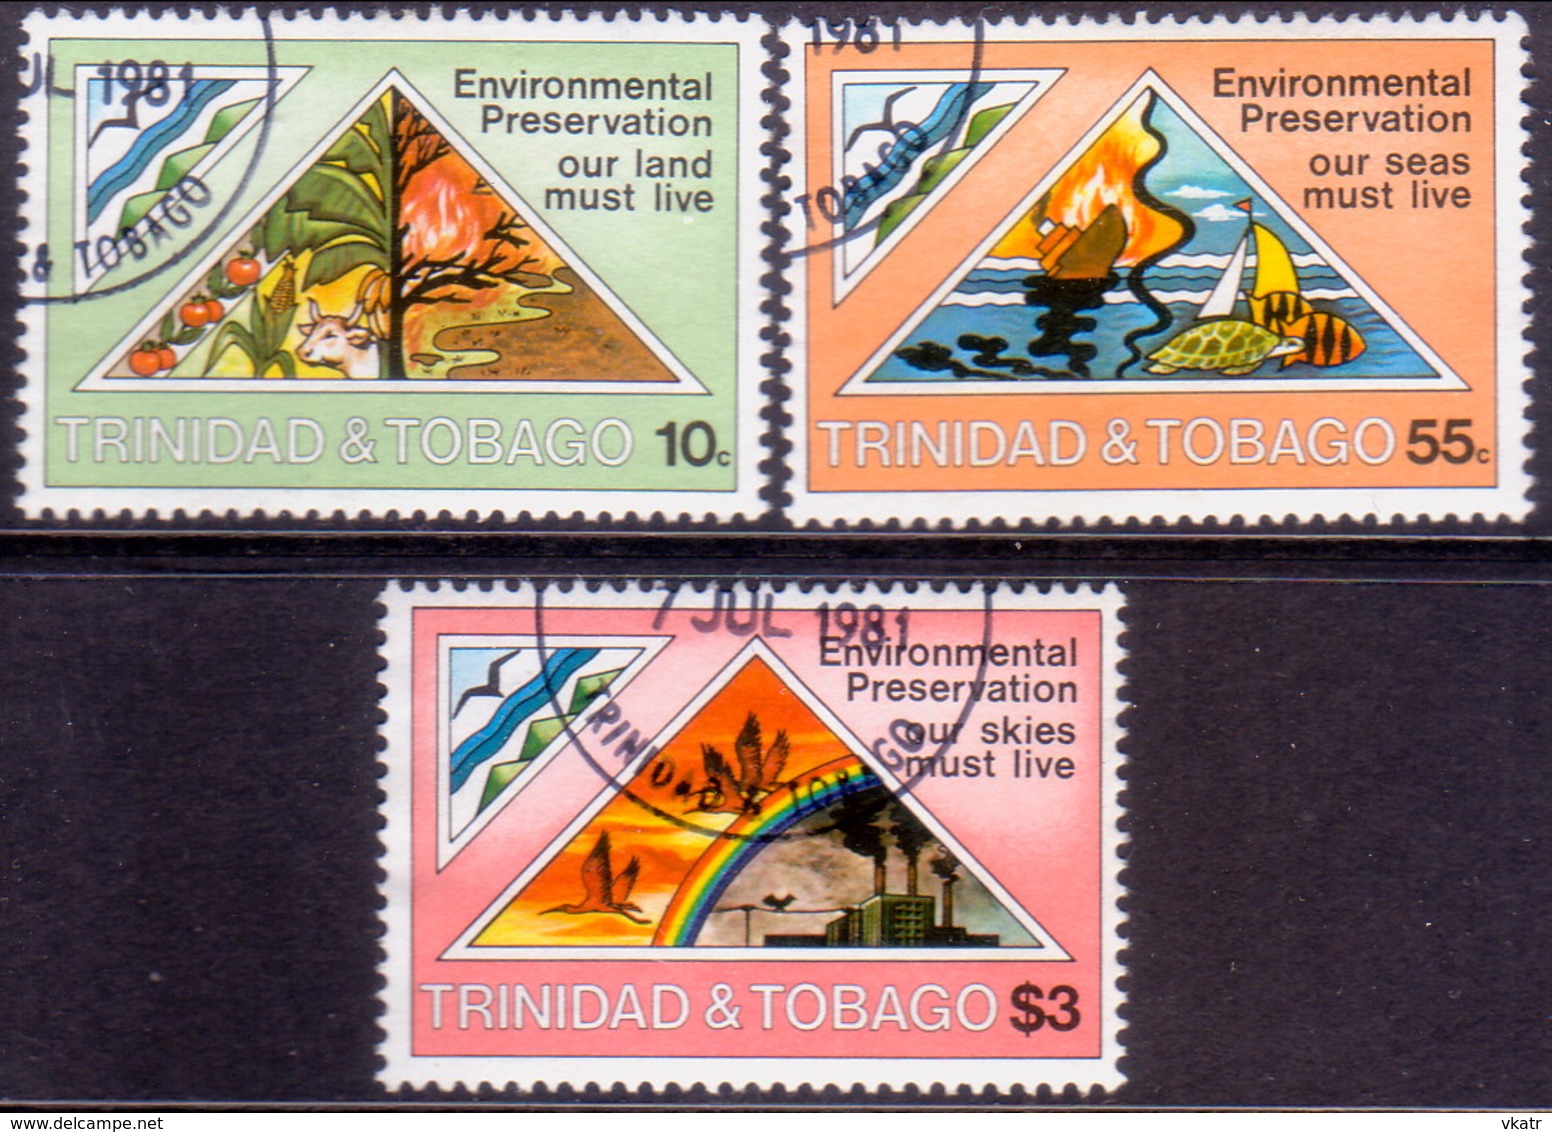 TRINIDAD & TOBAGO 1981 SG #585-87 Compl.set Used Environmental Preservation - Trinidad & Tobago (1962-...)